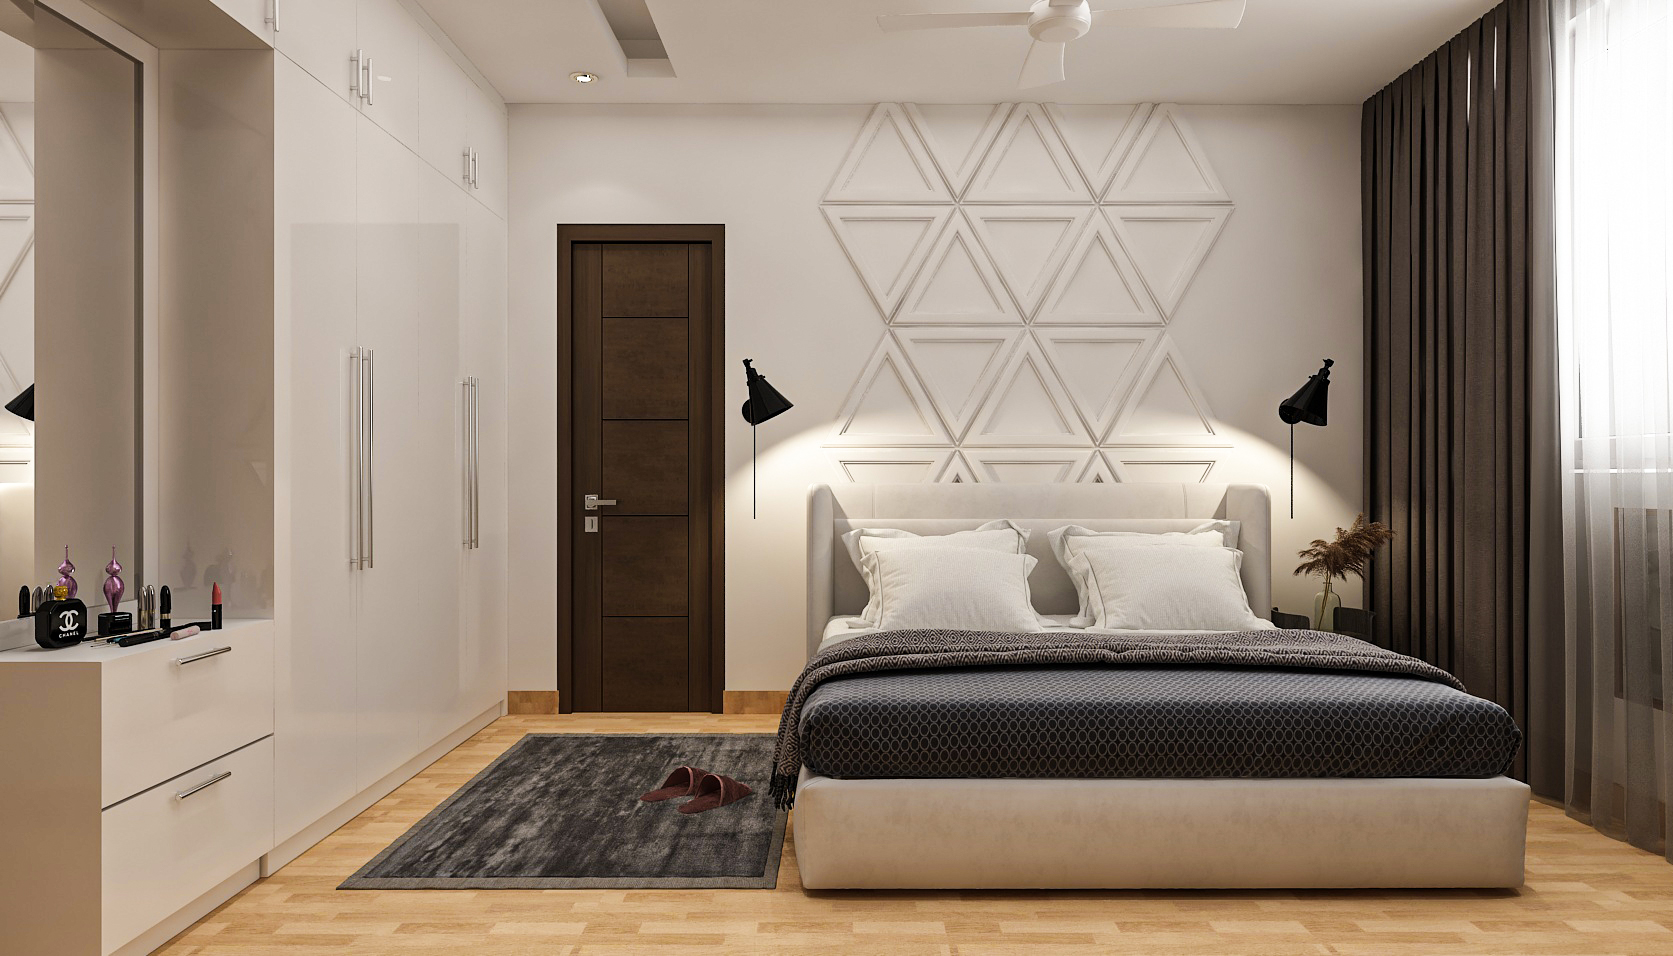 Modern Master Bedroom With Elegant Interior Design | Livspace